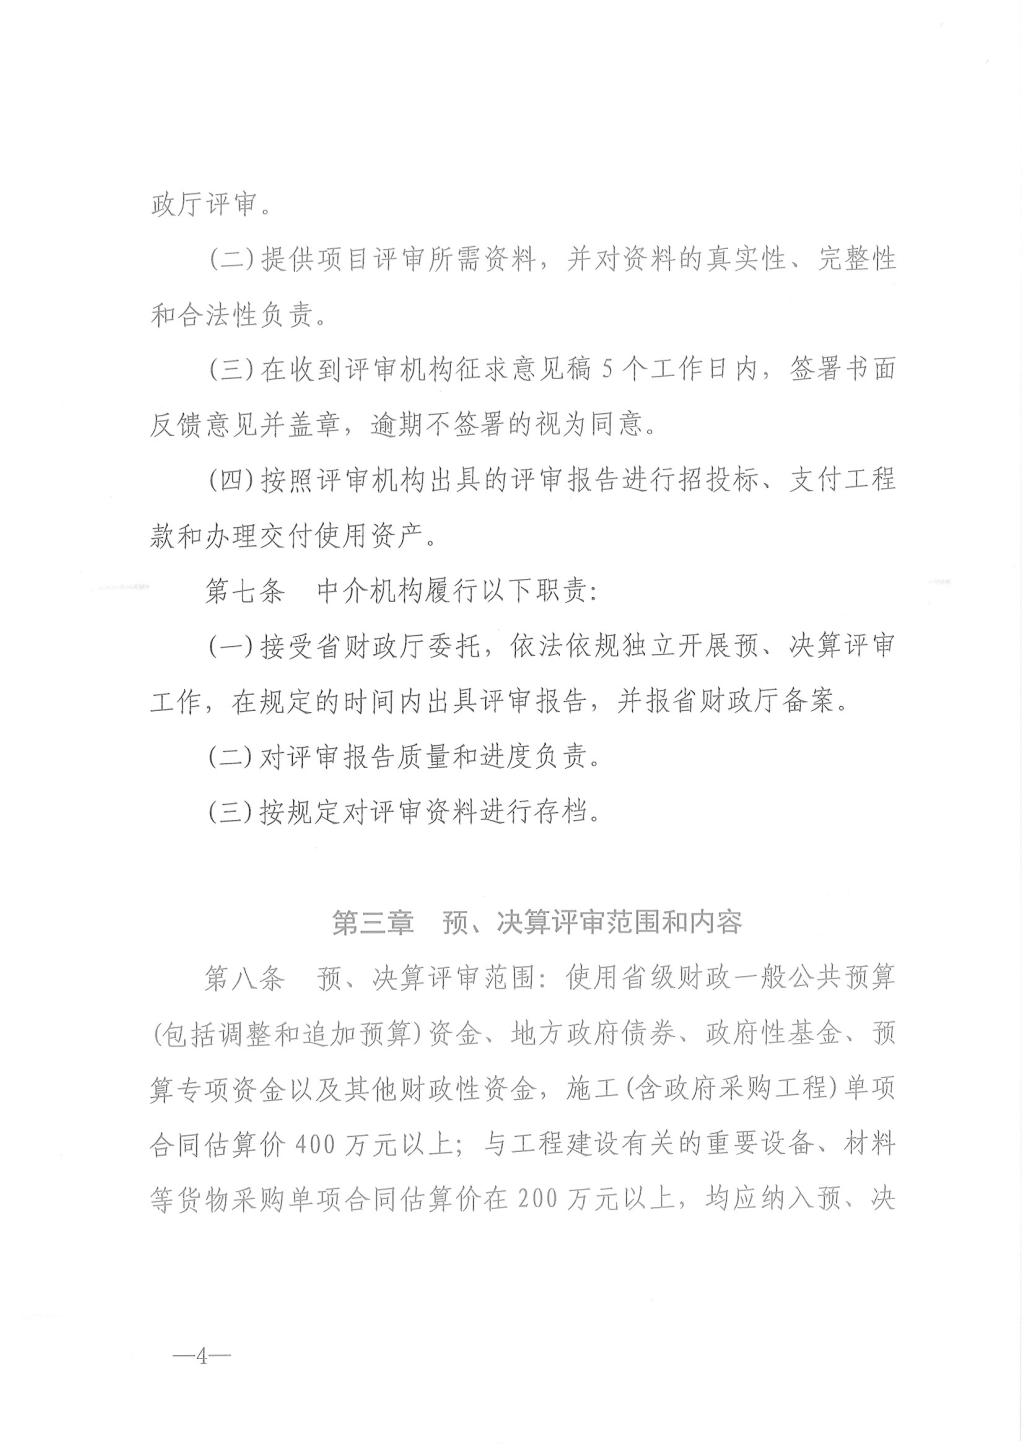 江西省省级政府投资建设项目预决算评审办法7.jpg